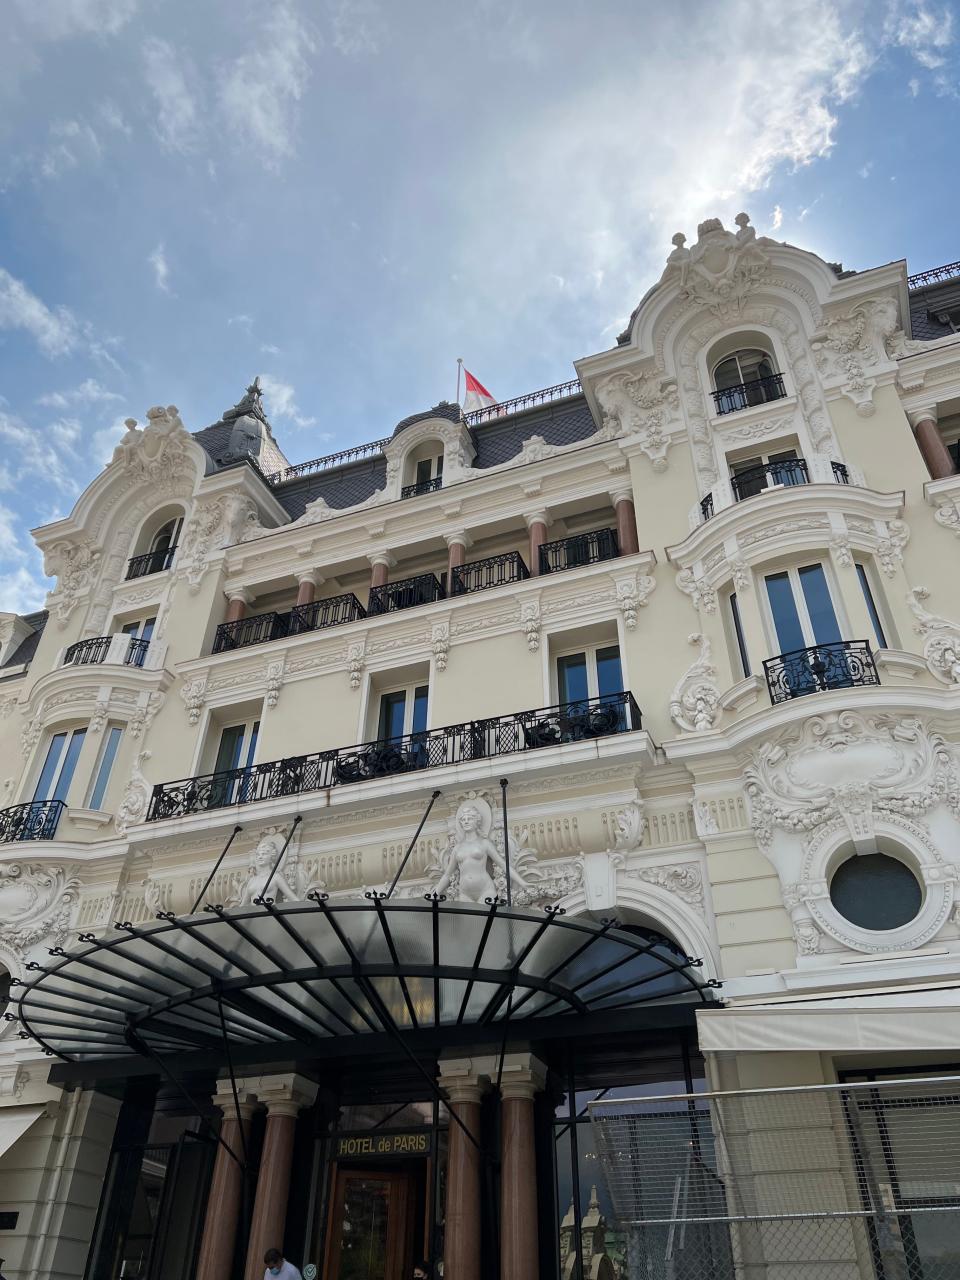 The exterior building, windows, and entrance to Hotel De Paris in Monte Carlo, Monaco.